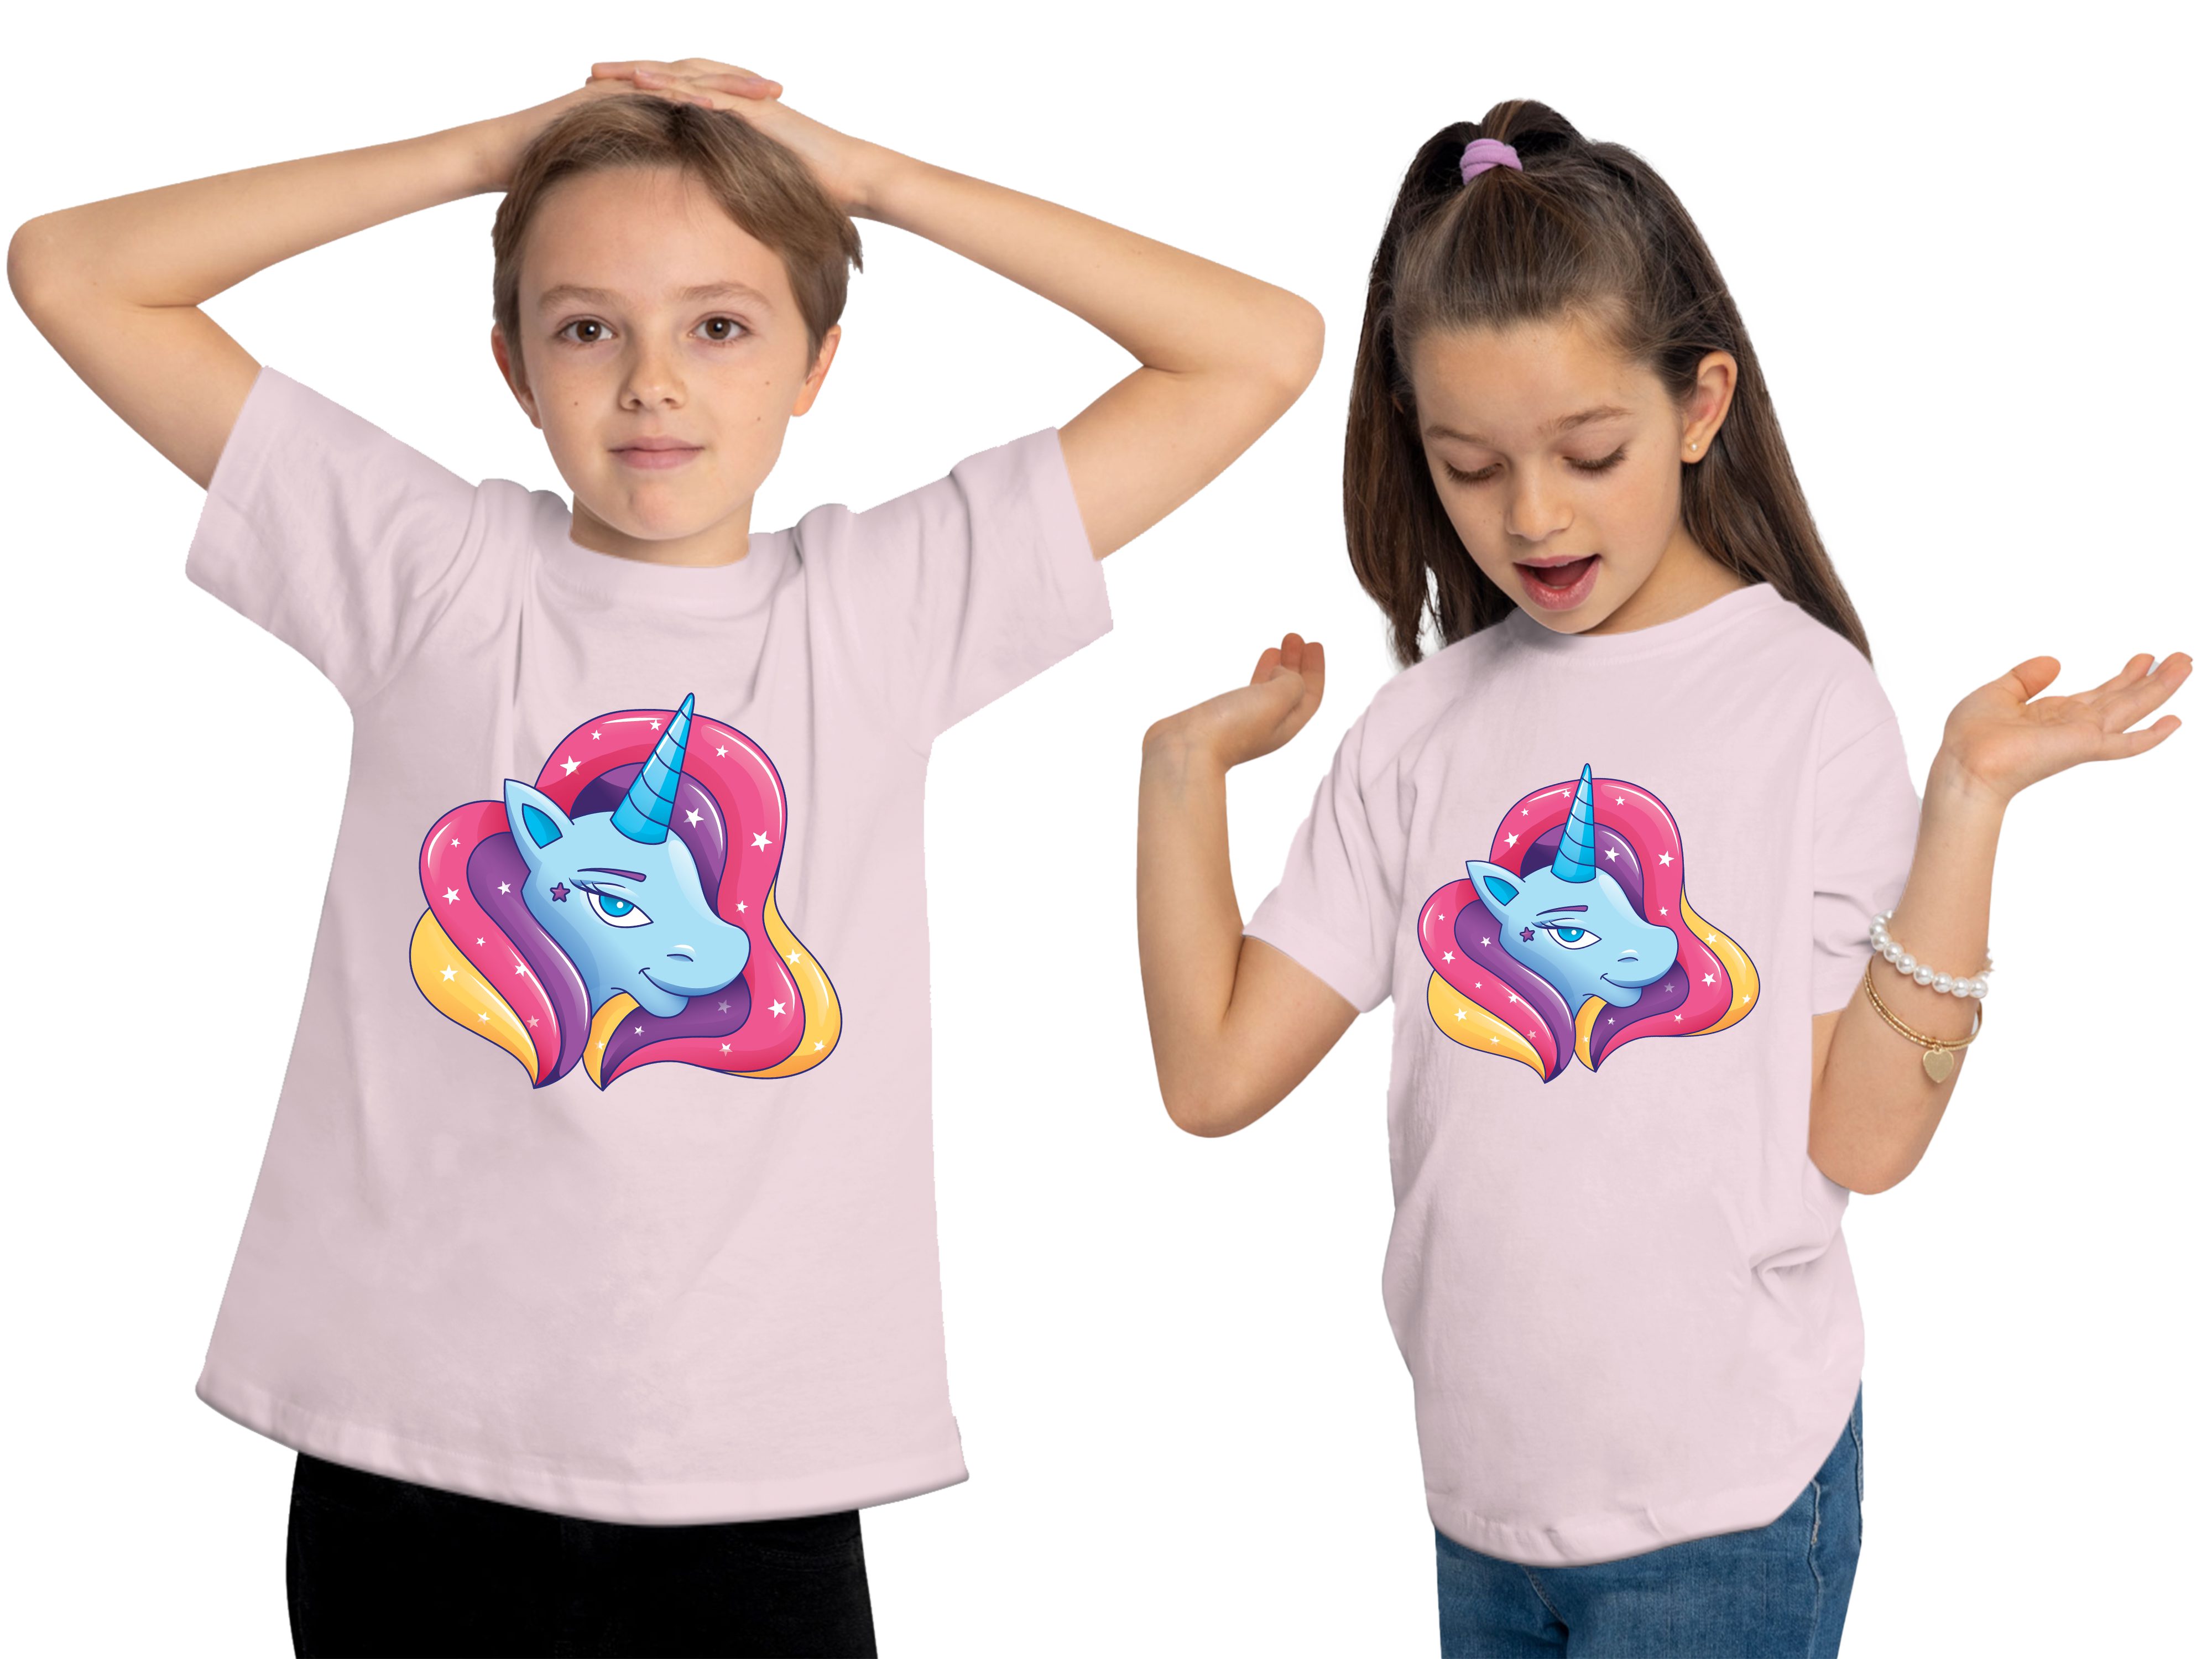 Kinder mit - Baumwollshirt Regenbogenmähne i195 Kopf Print-Shirt bedrucktes Aufdruck, Mädchen rosa T-Shirt mit Einhorn MyDesign24